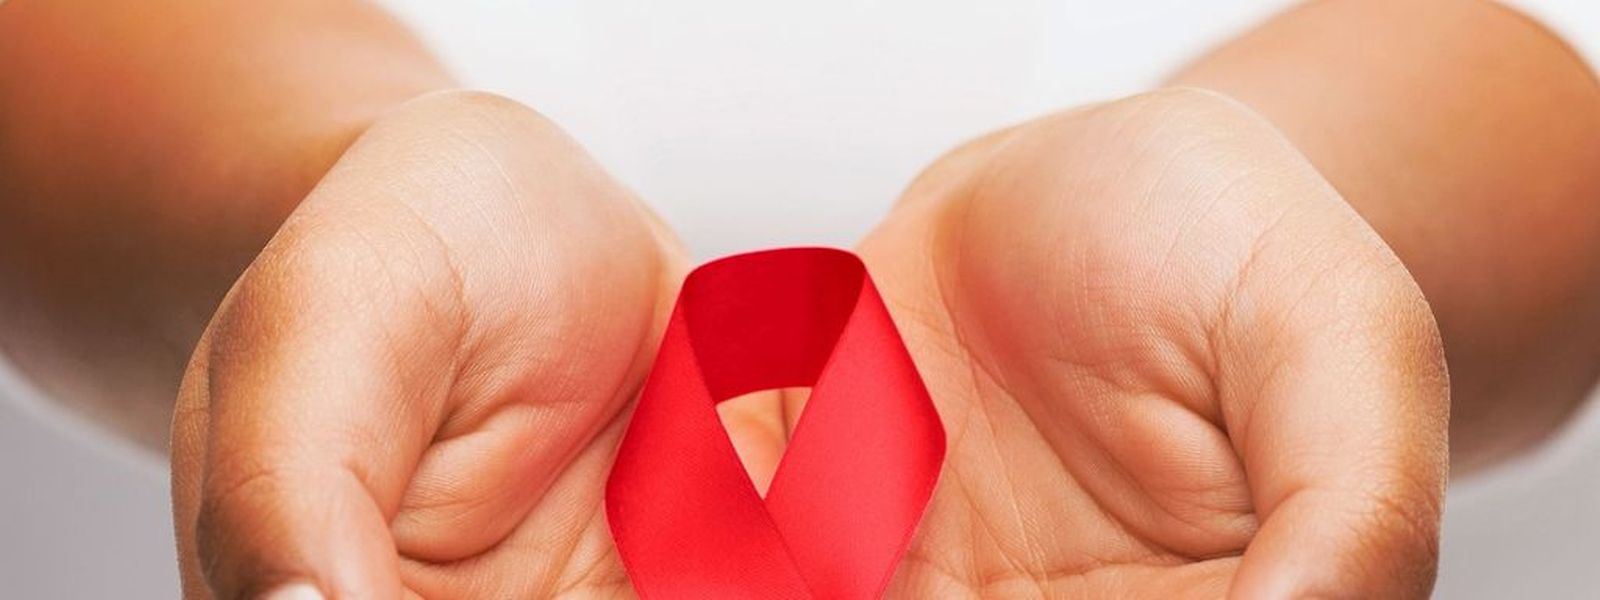 Aidsvorbeugung ist besonders bei Jugendlichen und jungen Frauen immer noch ein Thema.